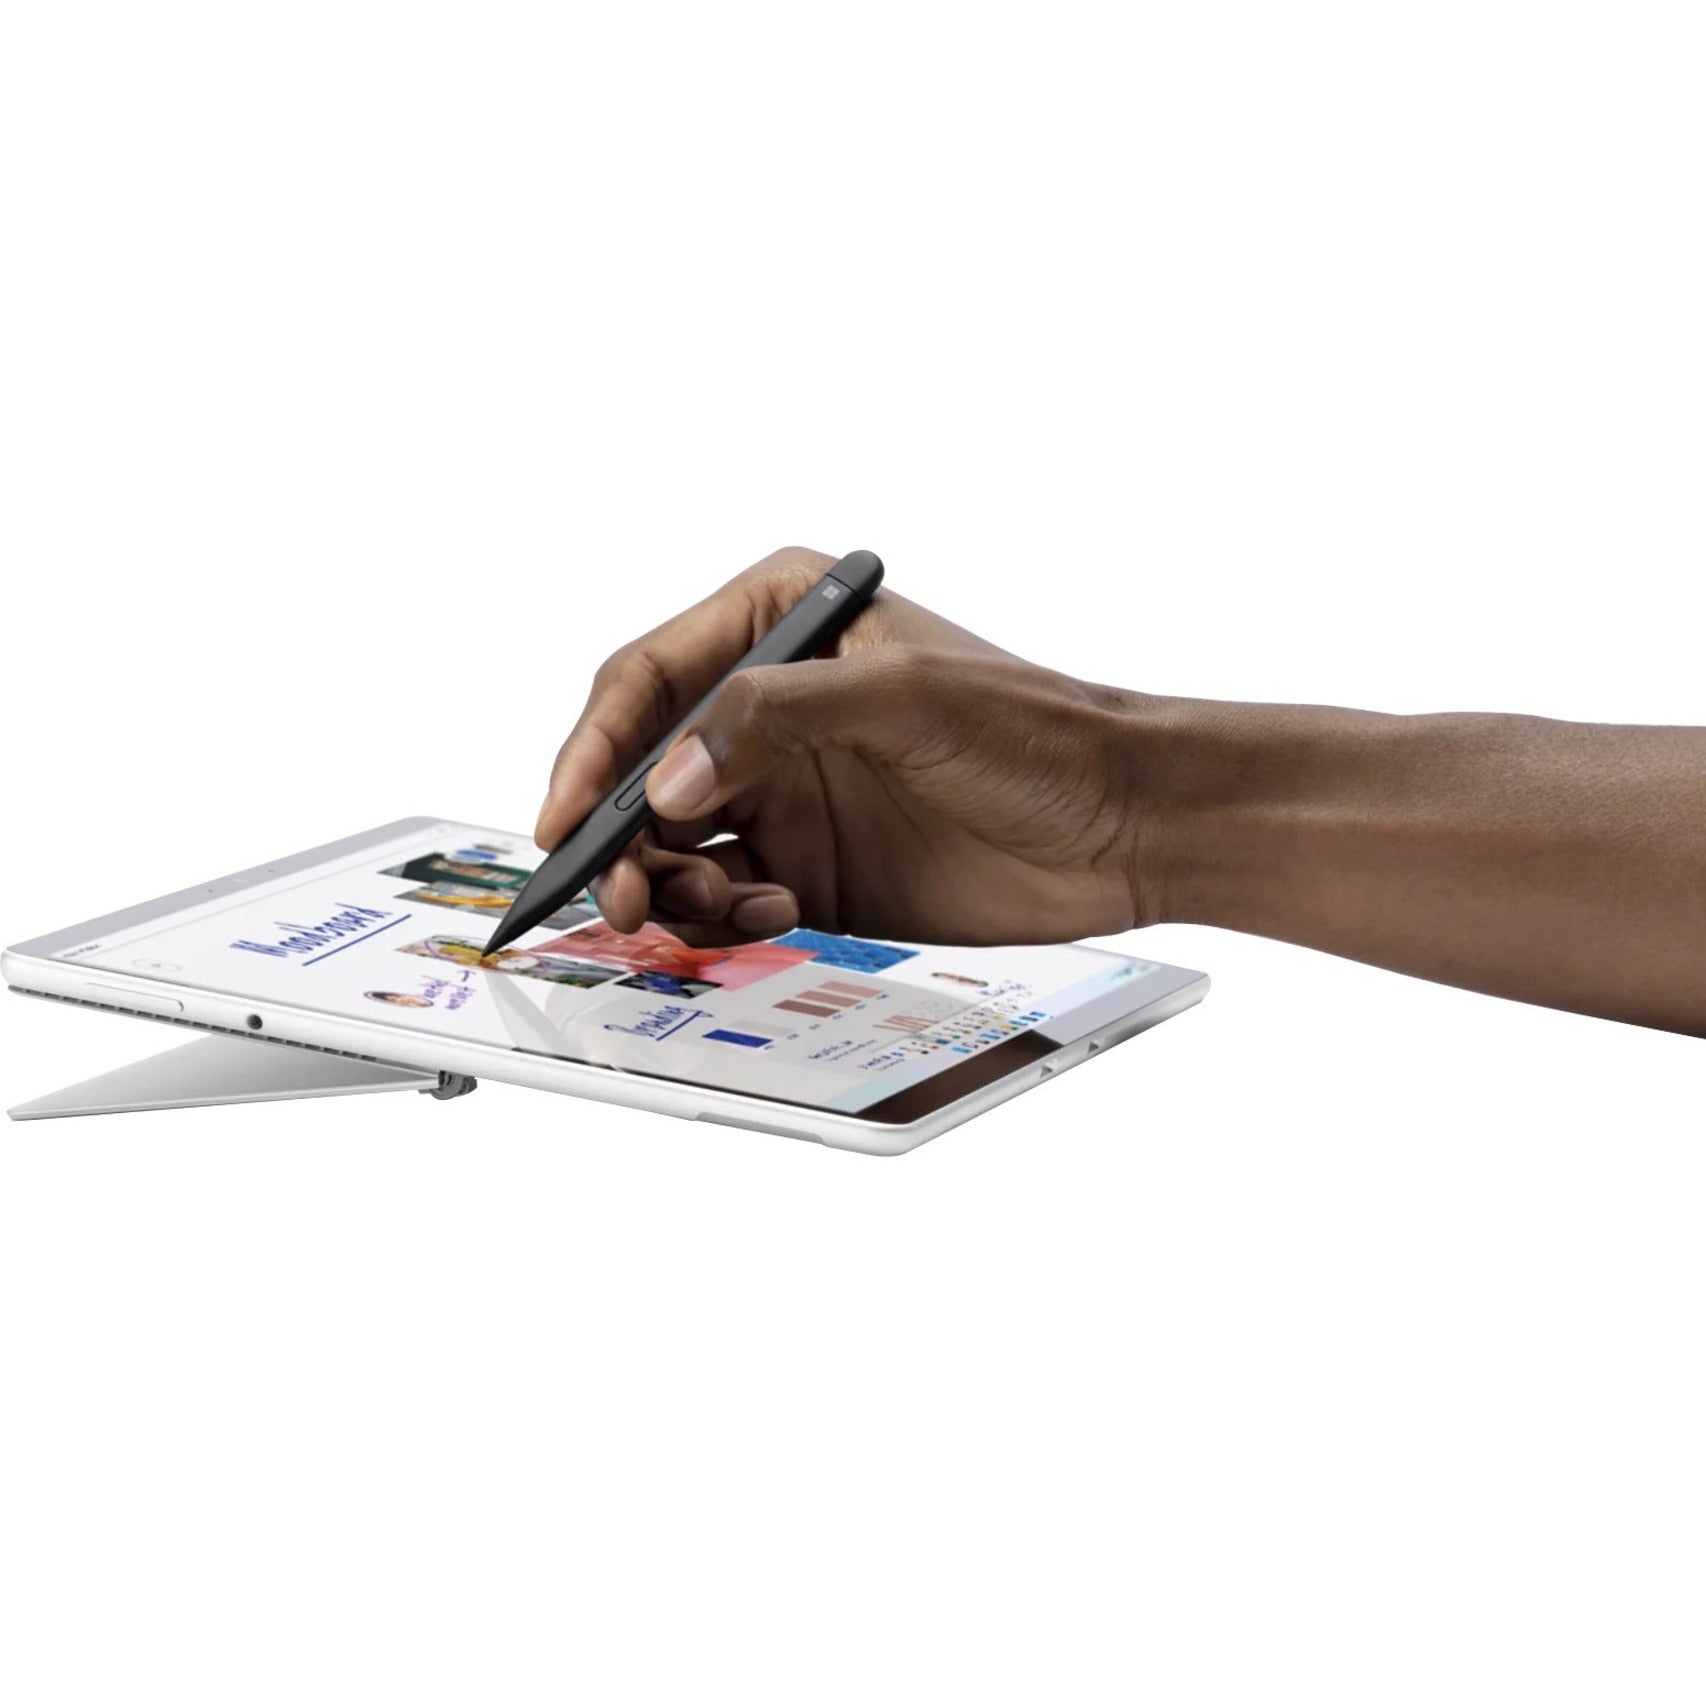 微软 8WX-00001 Surface Slim Pen 2 笔 蓝牙 4096 按压级别 15 小时电池寿命 品牌名称: 微软 (Microsoft)